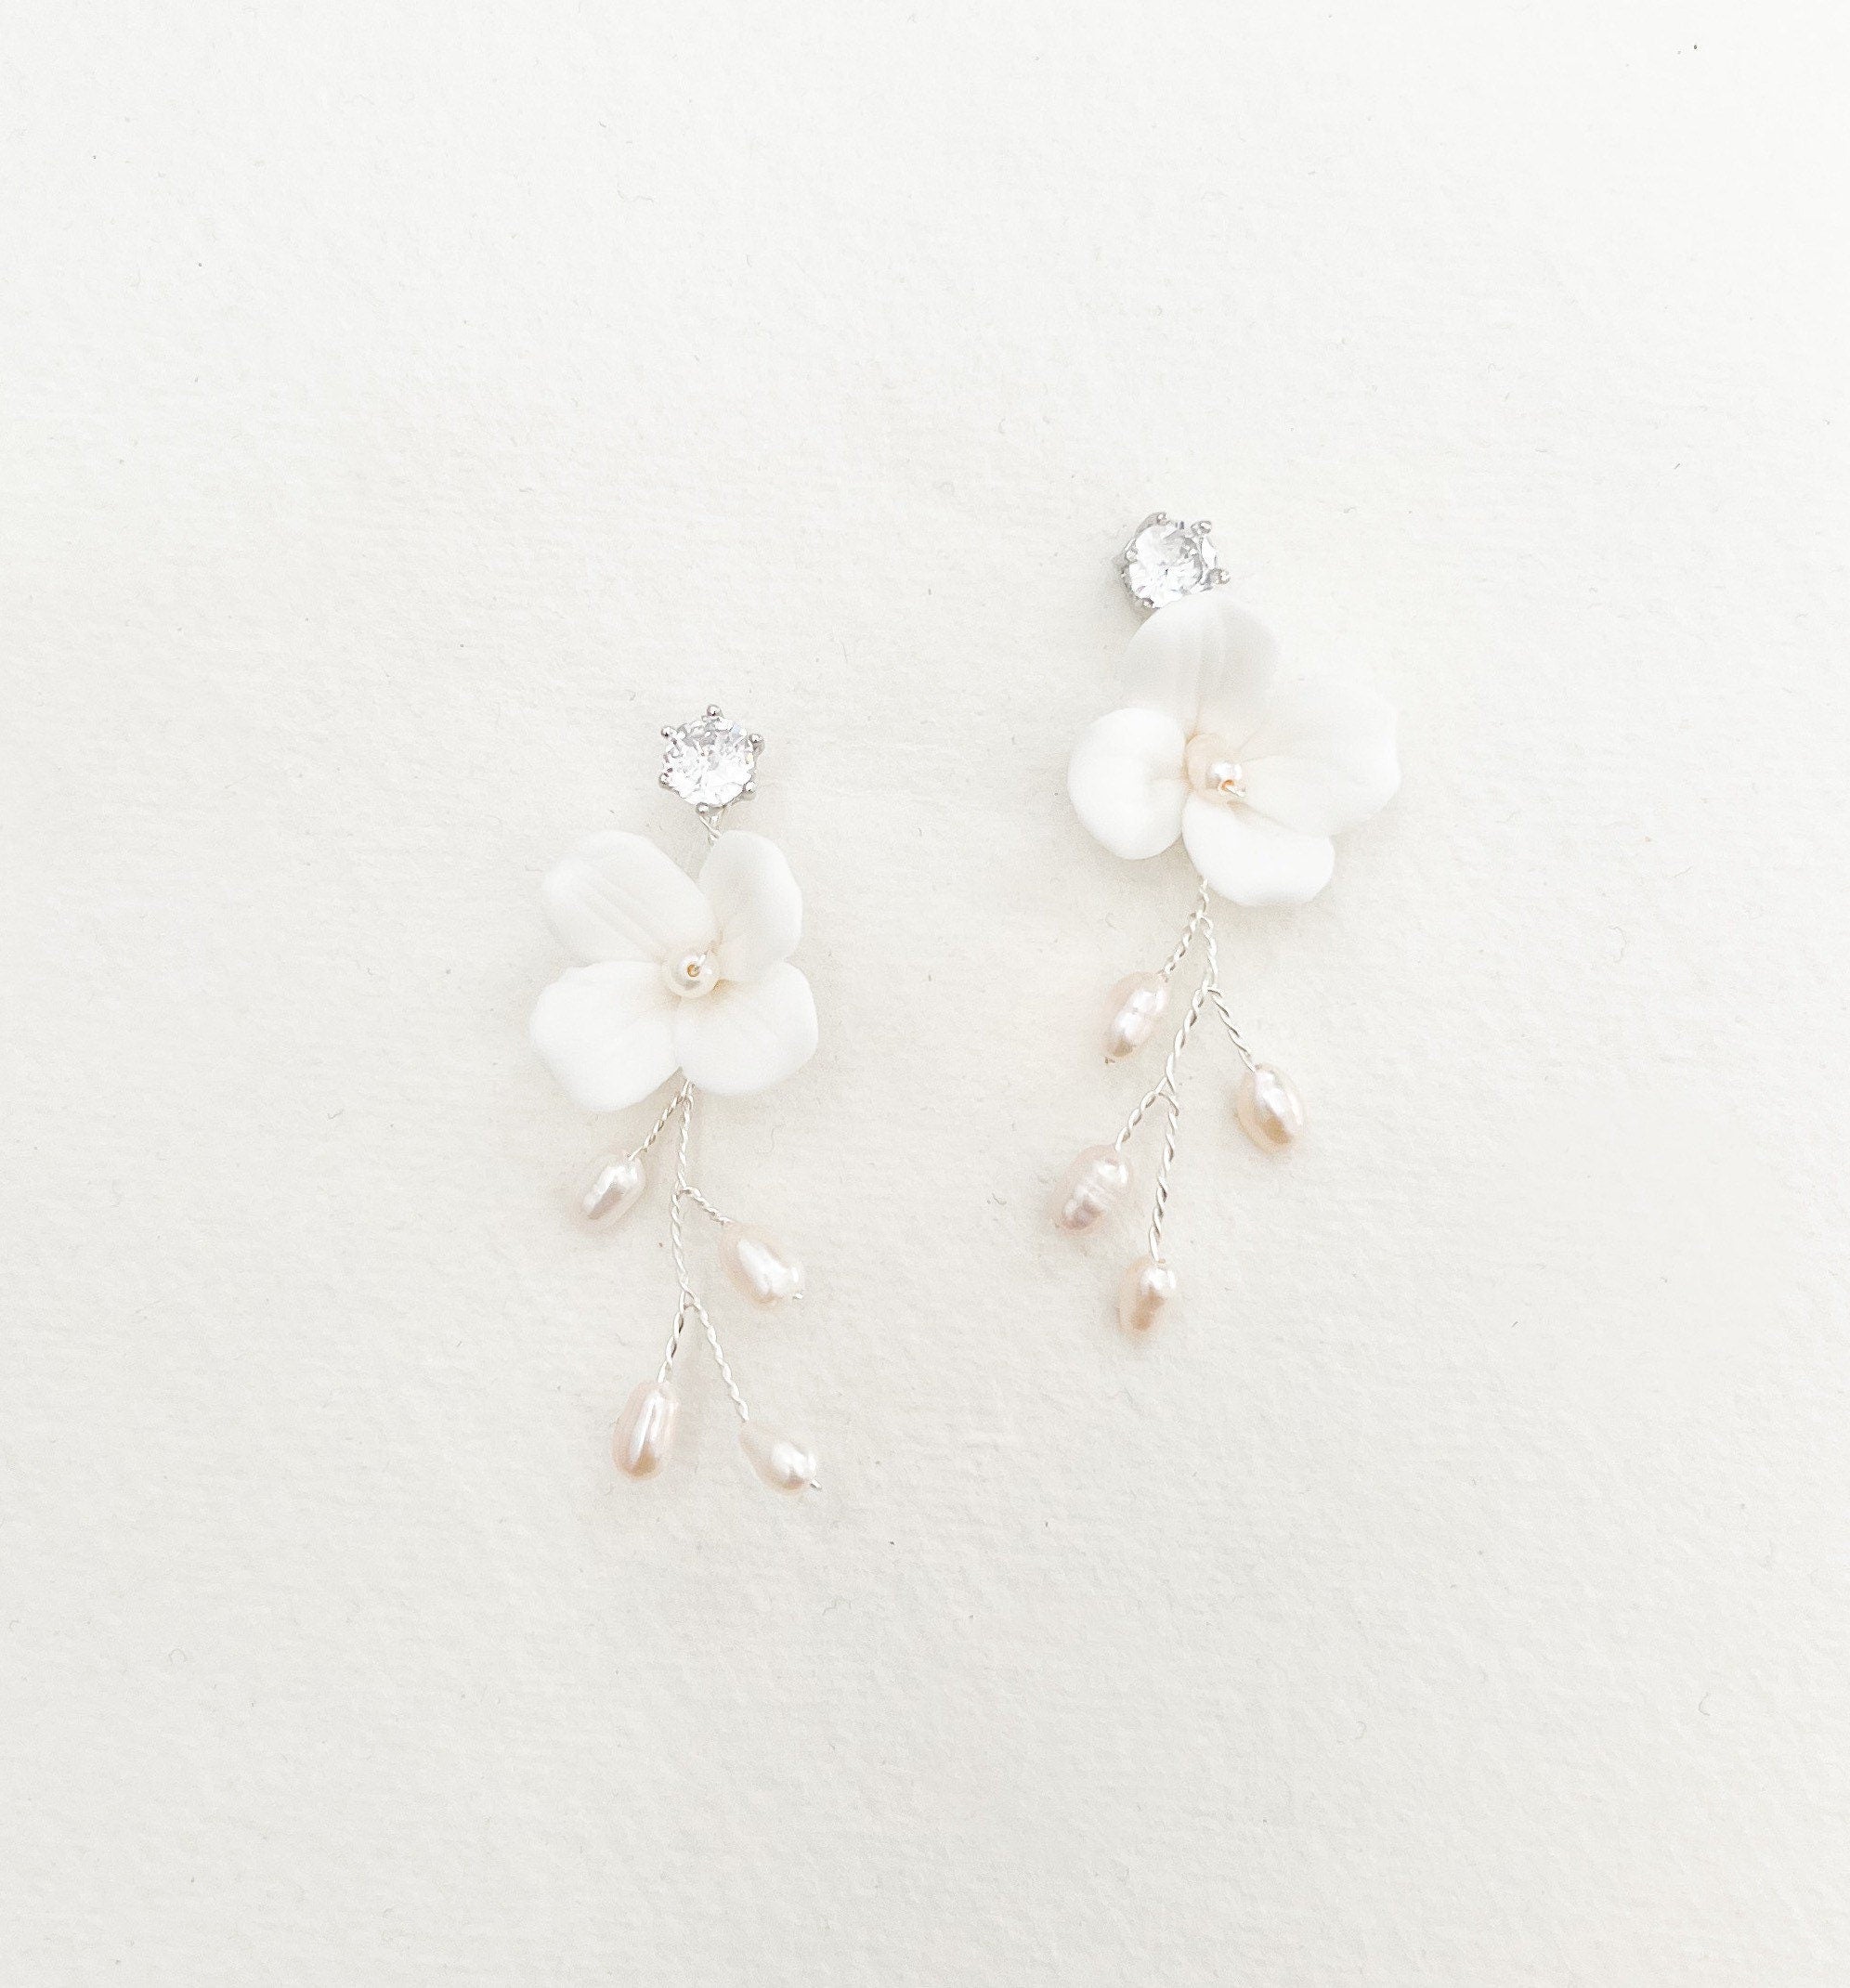 SWEETPEA // Ceramic floral bridal earrings